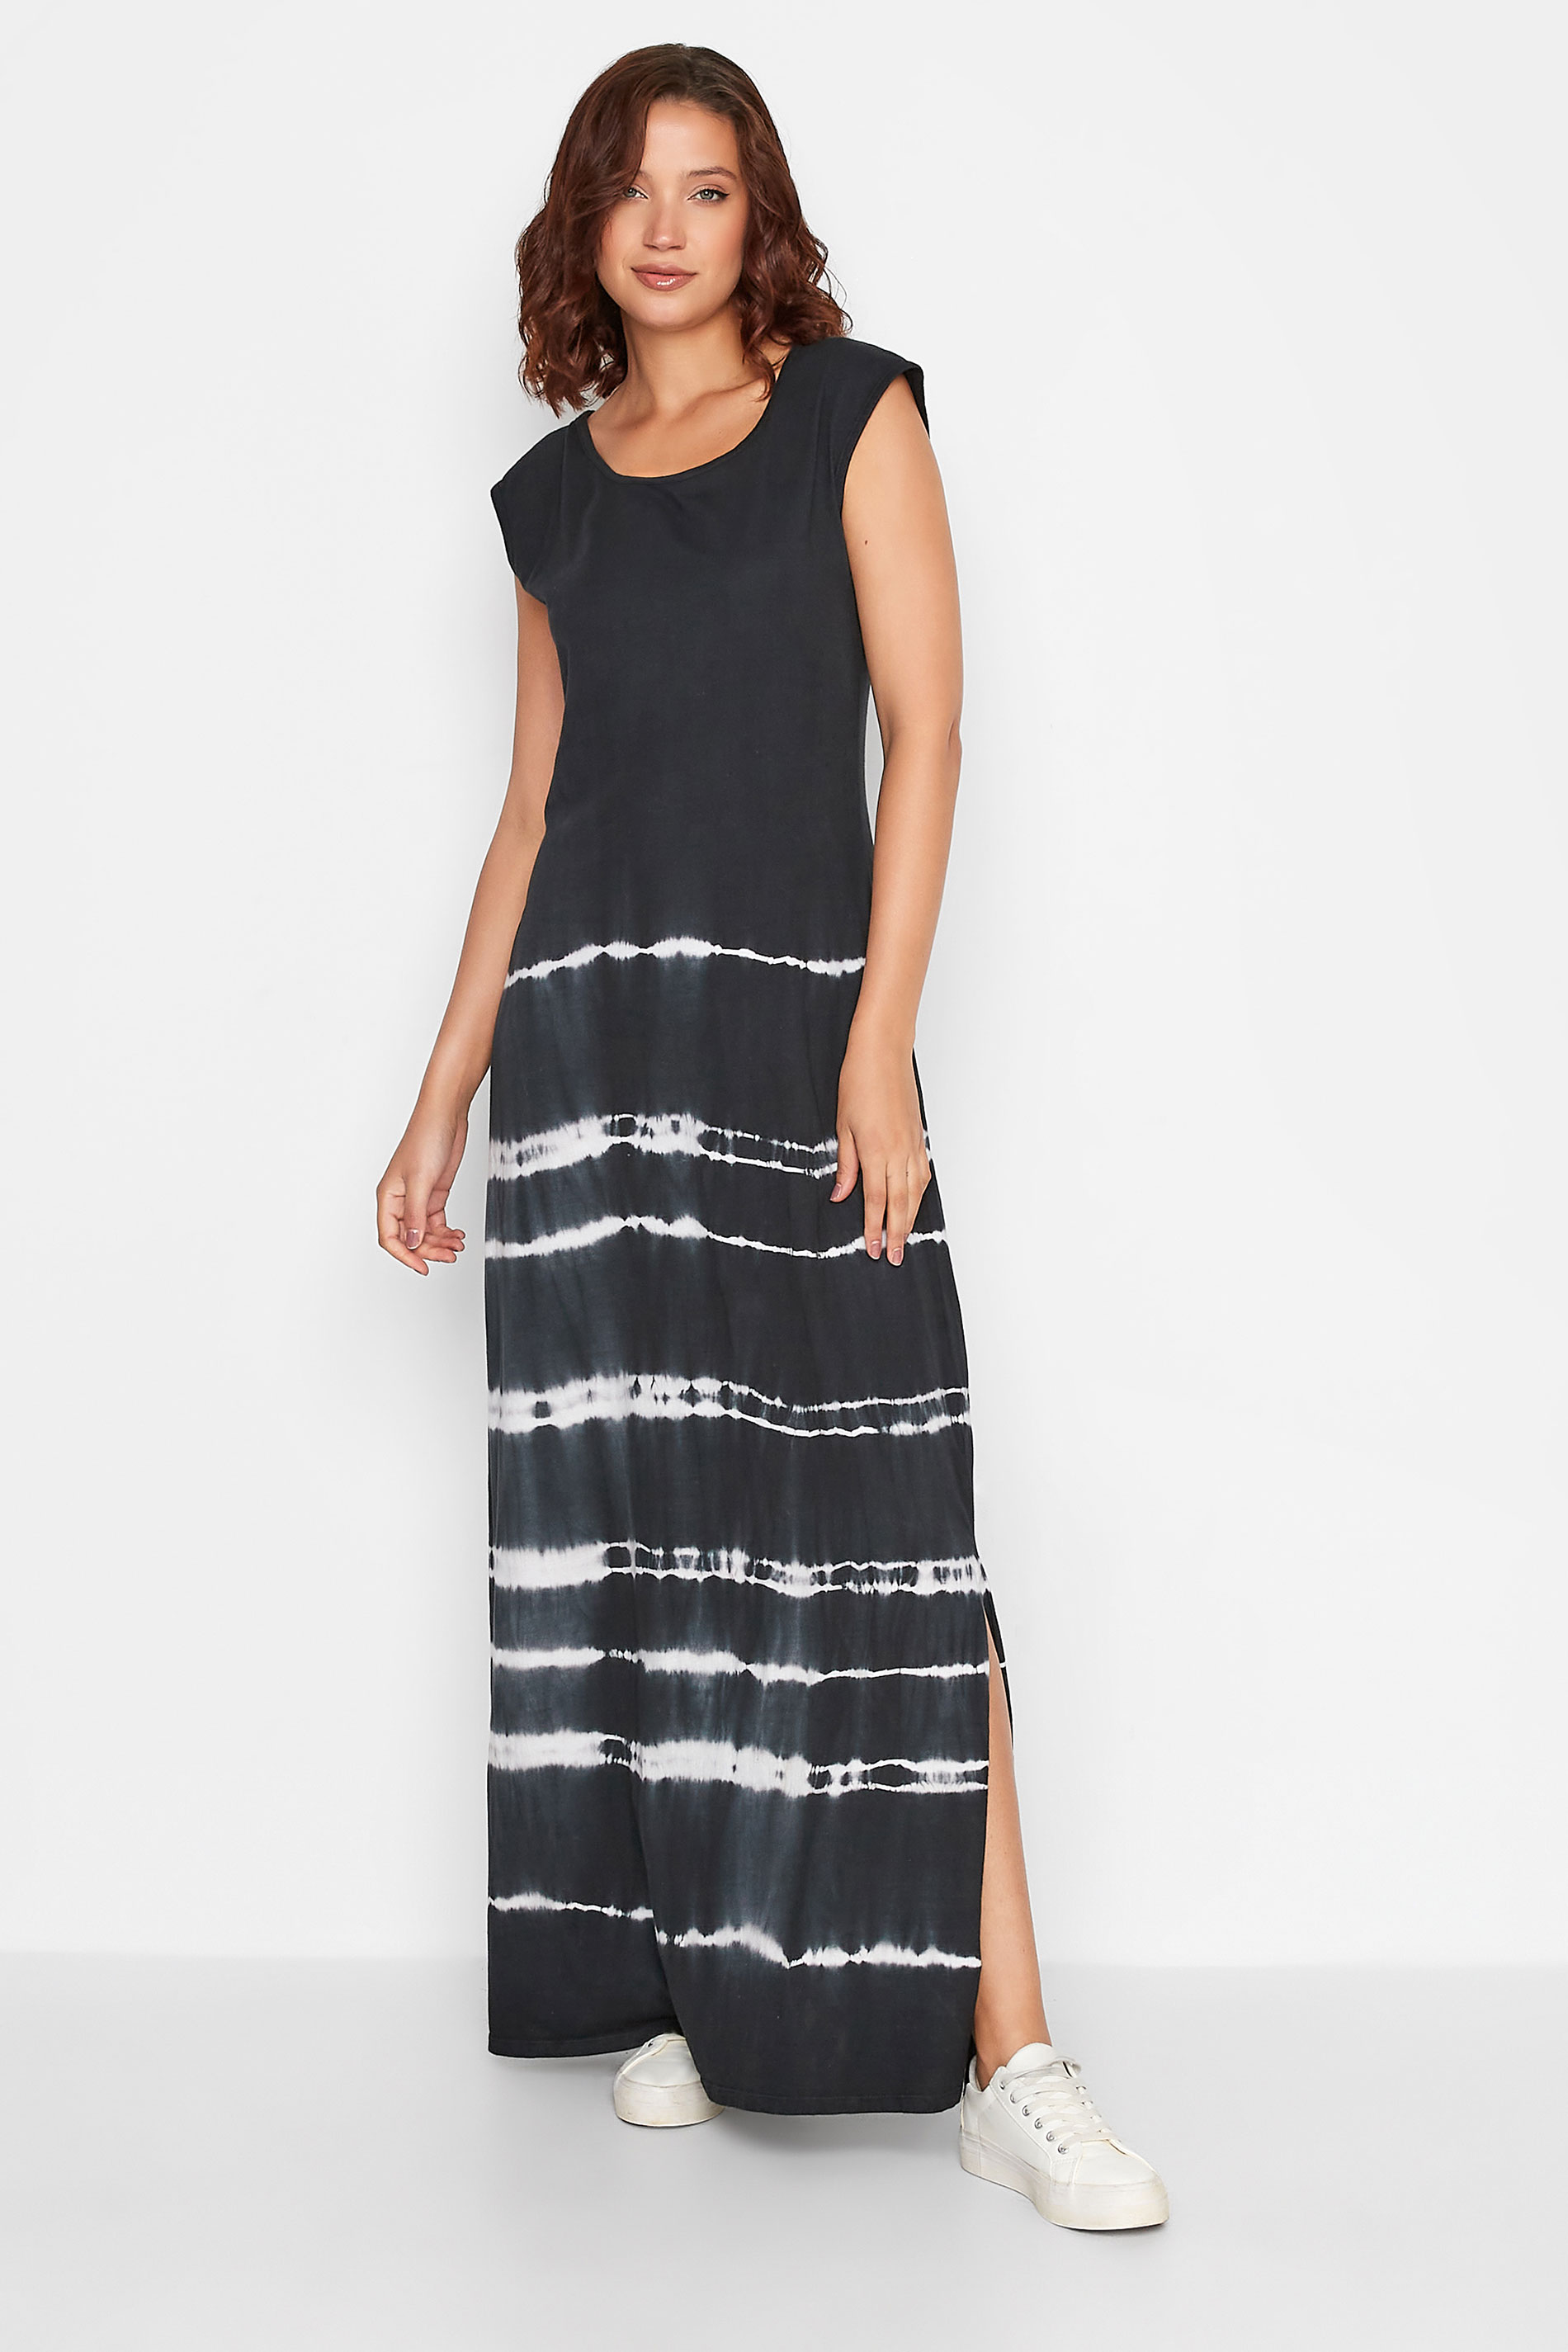 LTS Tall Women's Black Tie Dye Side Split Dress | Long Tall Sally 1